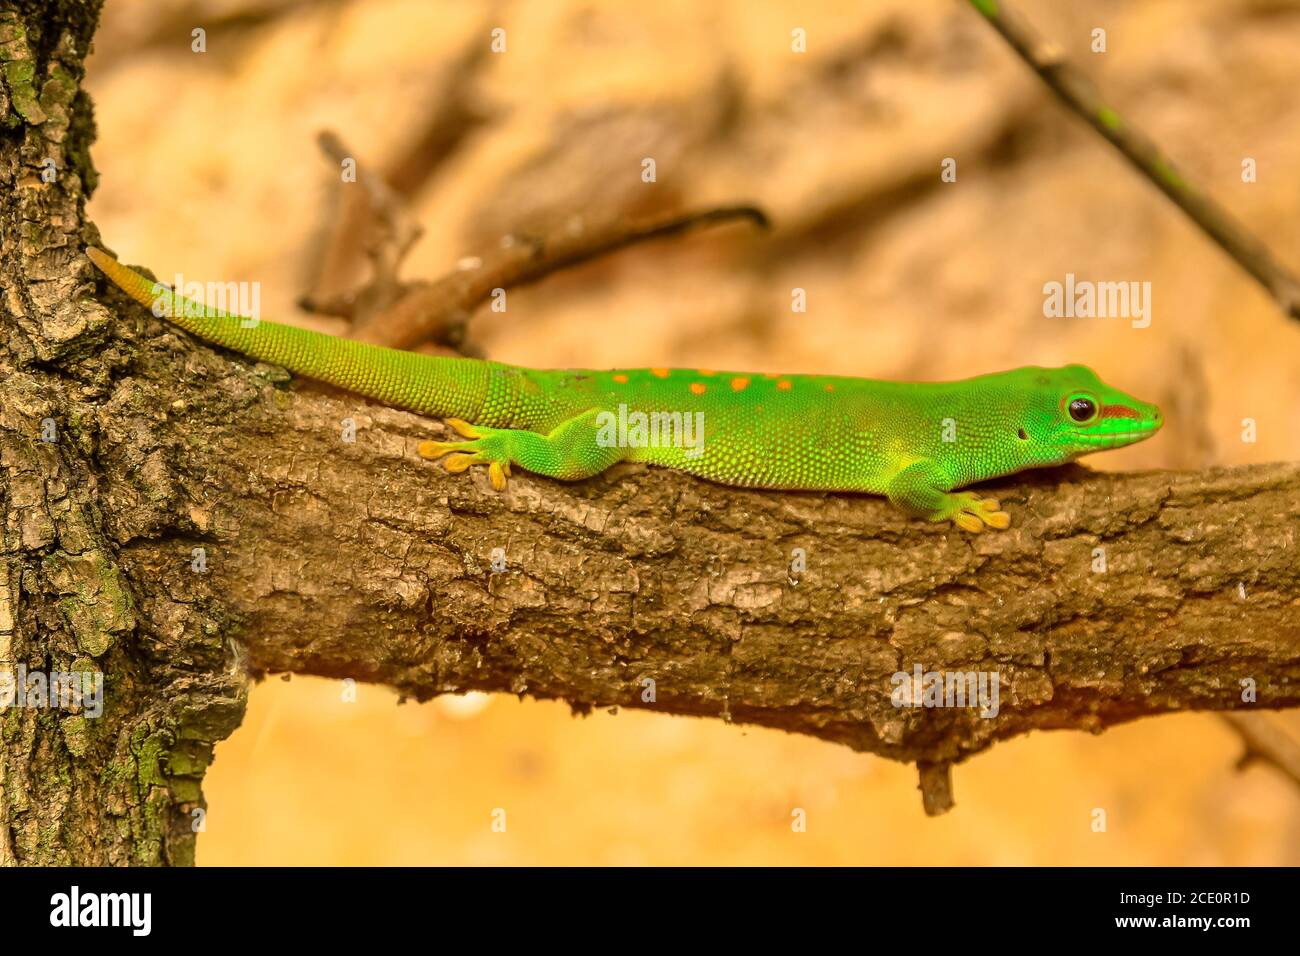 Gros plan d'une espèce verte de Gecko, Phelsuma madagascariensis, également appelée Madagascar Day gecko. Il vit dans les forêts tropicales de Madagascar. Repose sur un arbre Banque D'Images